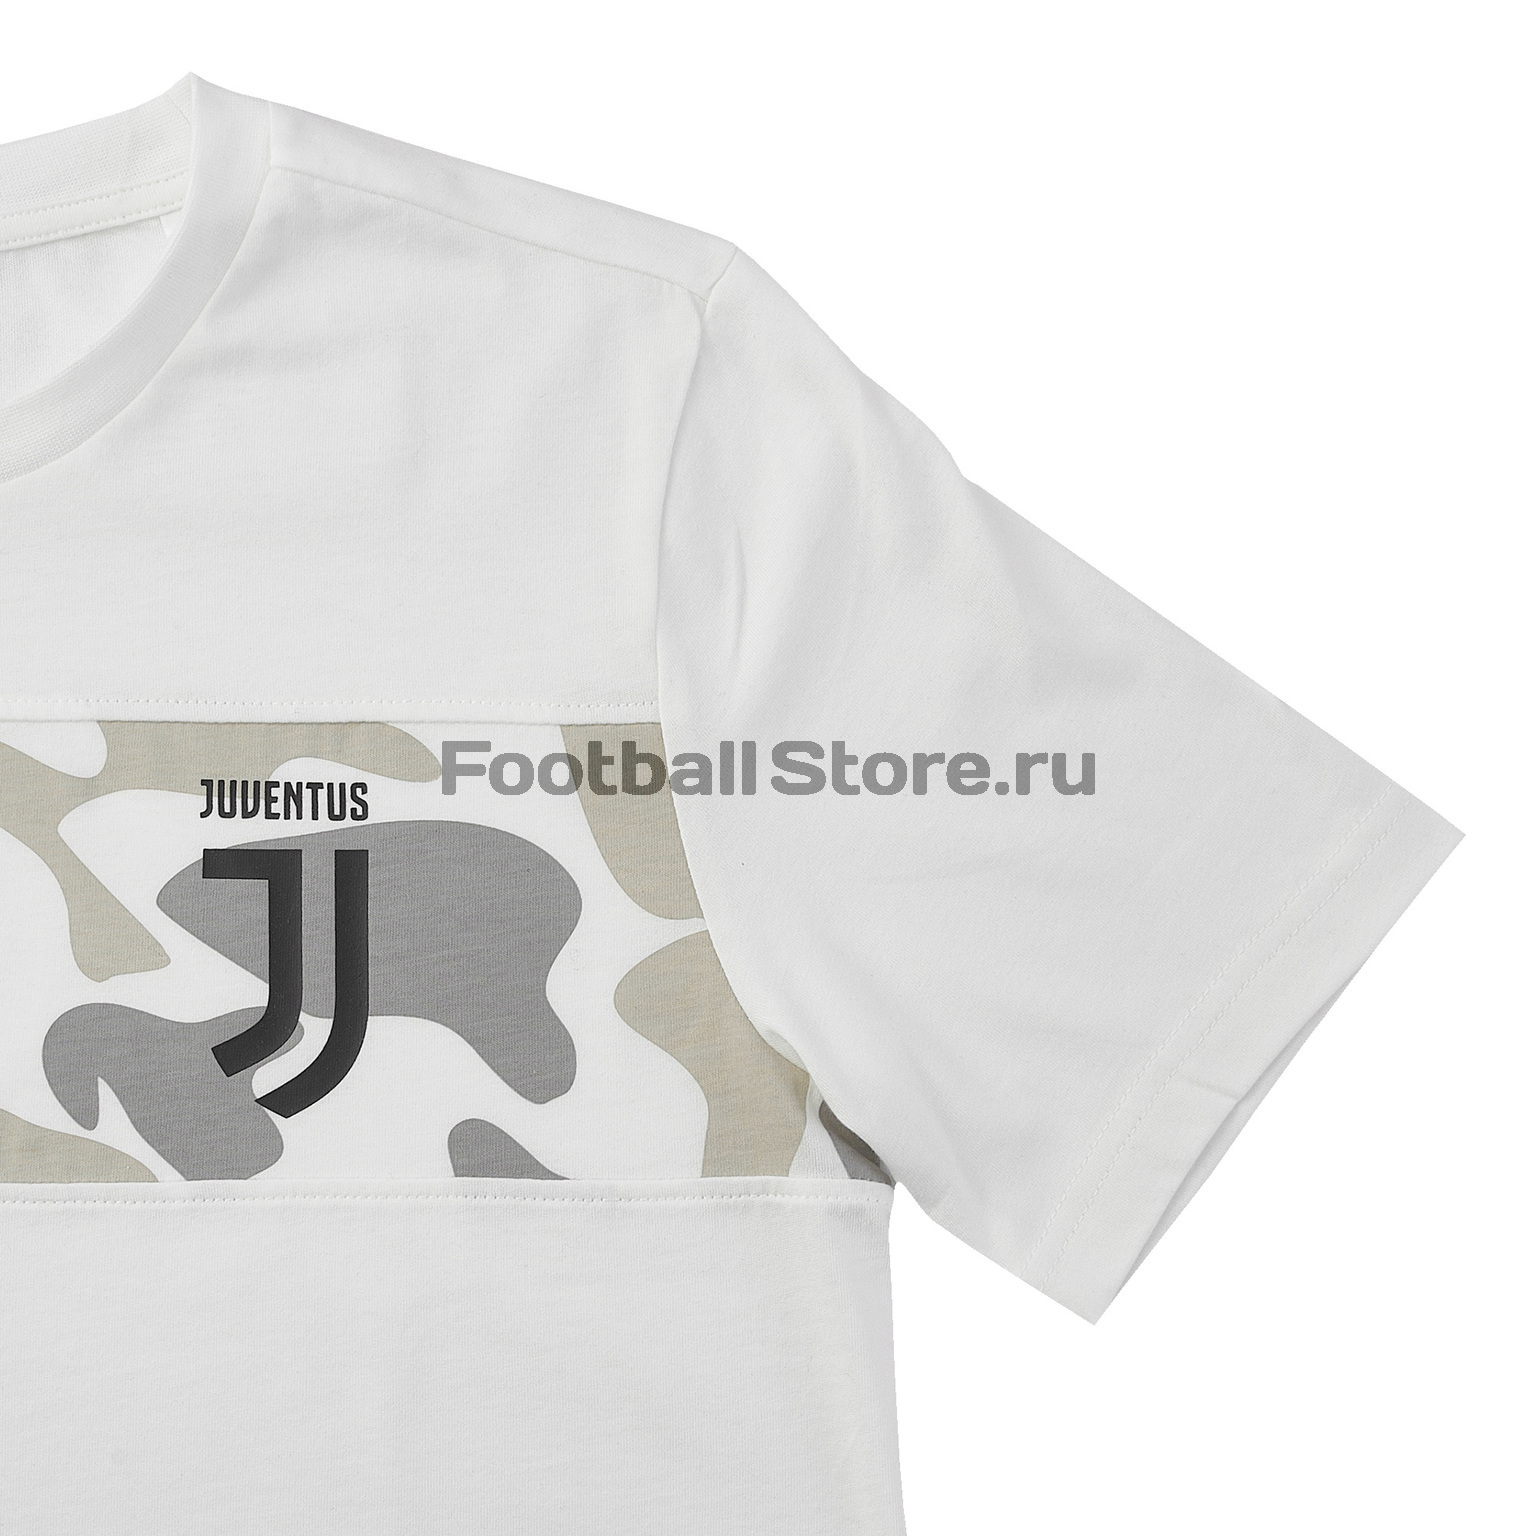 Футболка хлопковая подростковая Adidas Juventus DX9208